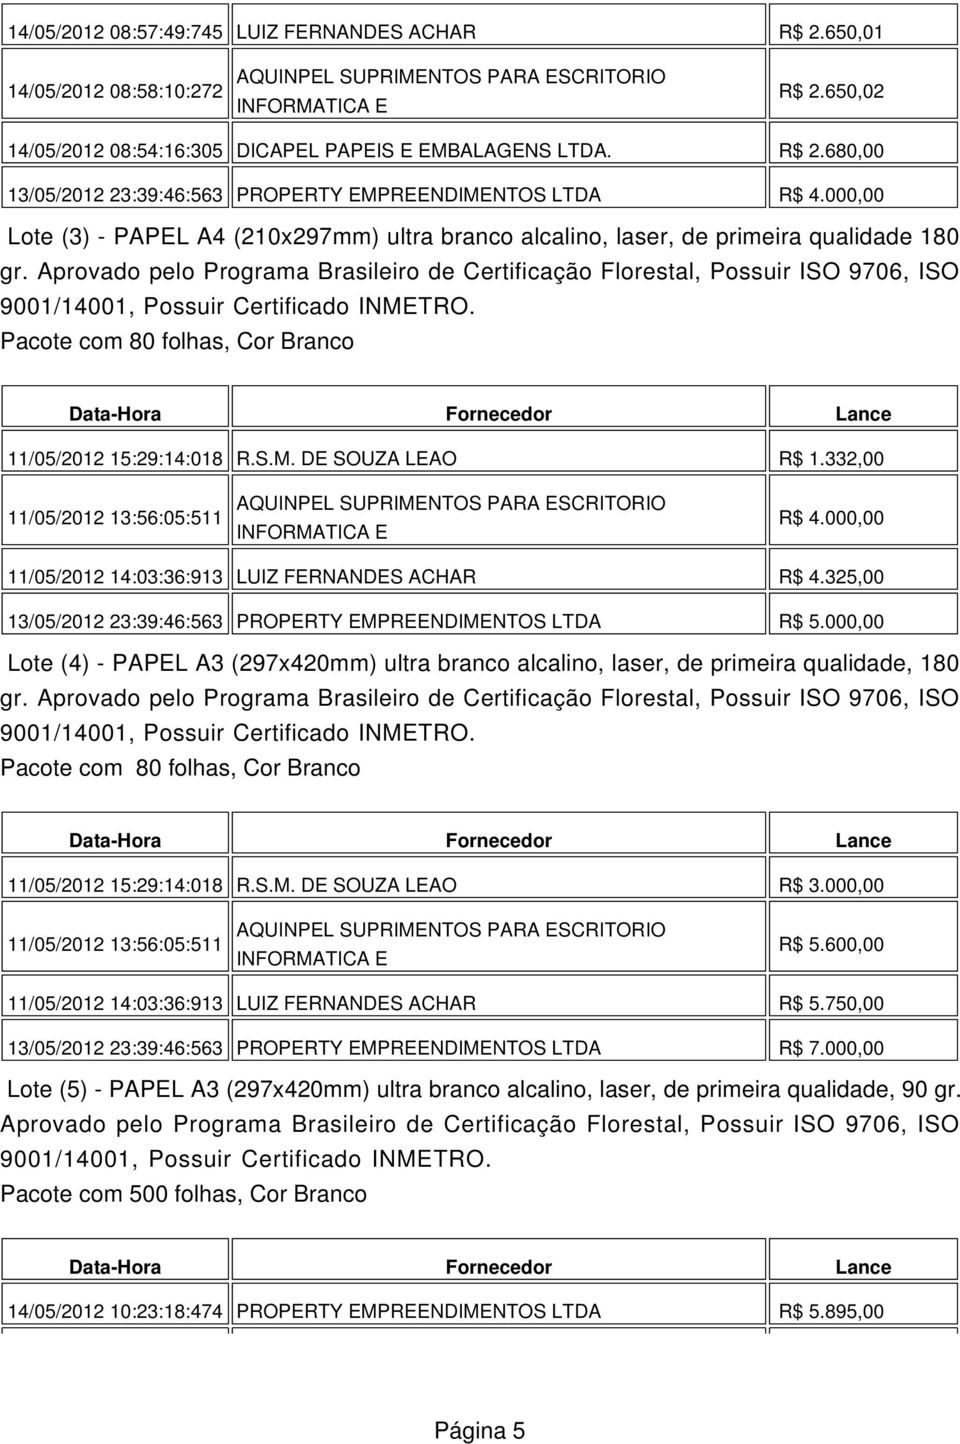 Aprovado pelo Programa Brasileiro de Certificação Florestal, Possuir ISO 9706, ISO Pacote com 80 folhas, Cor Branco 11/05/2012 15:29:14:018 R.S.M. DE SOUZA LEAO R$ 1.332,00 R$ 4.